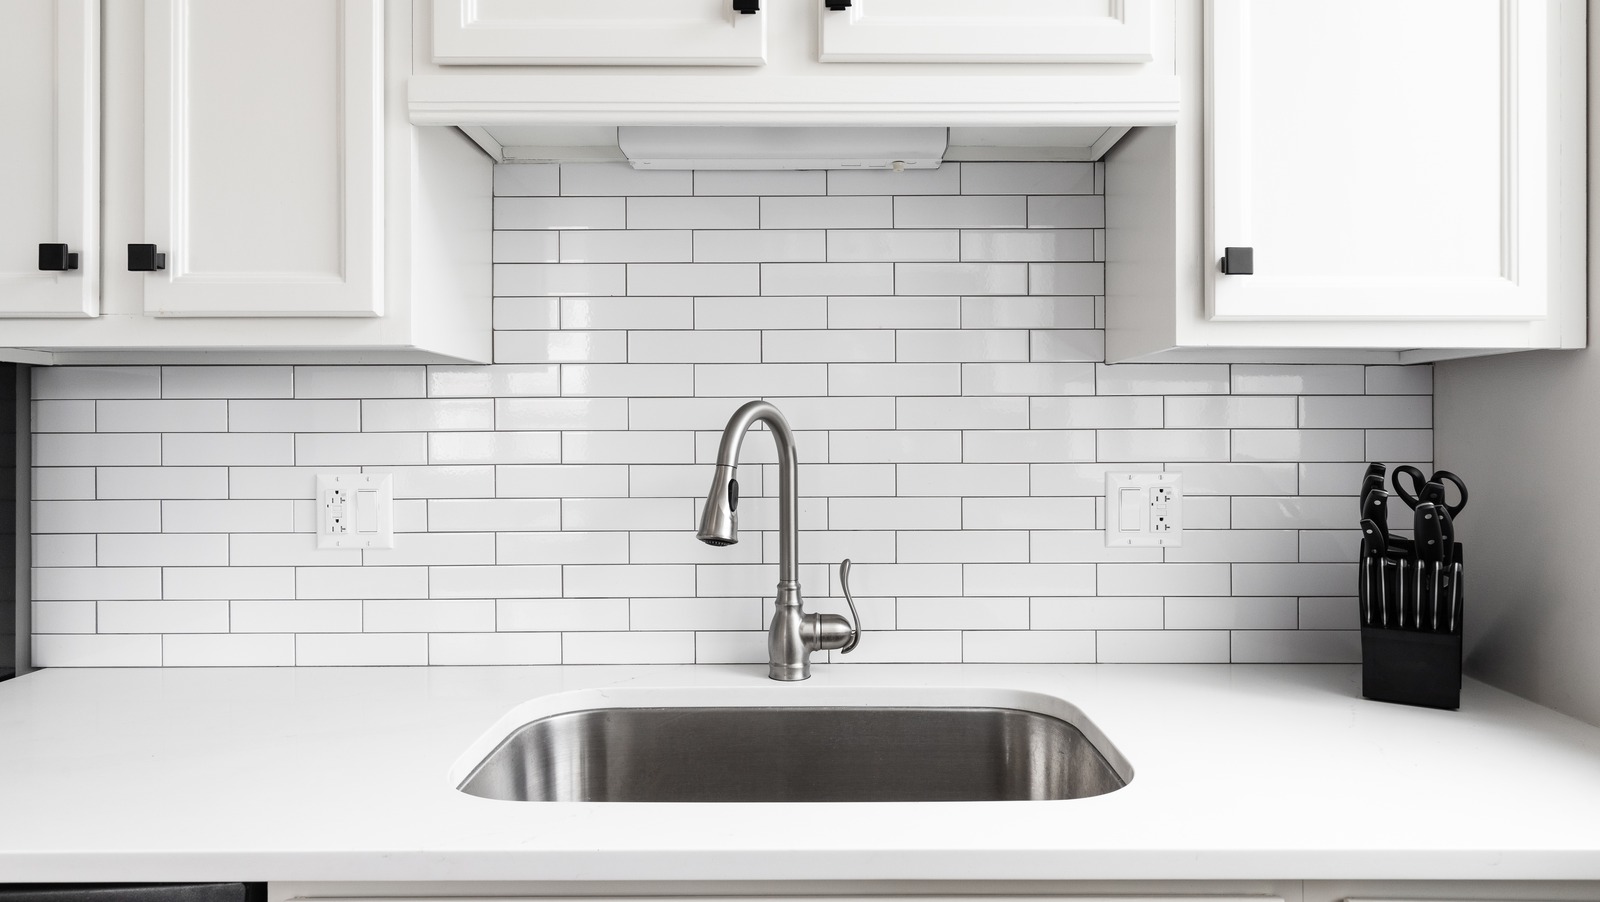 bleach kitchen sink odor